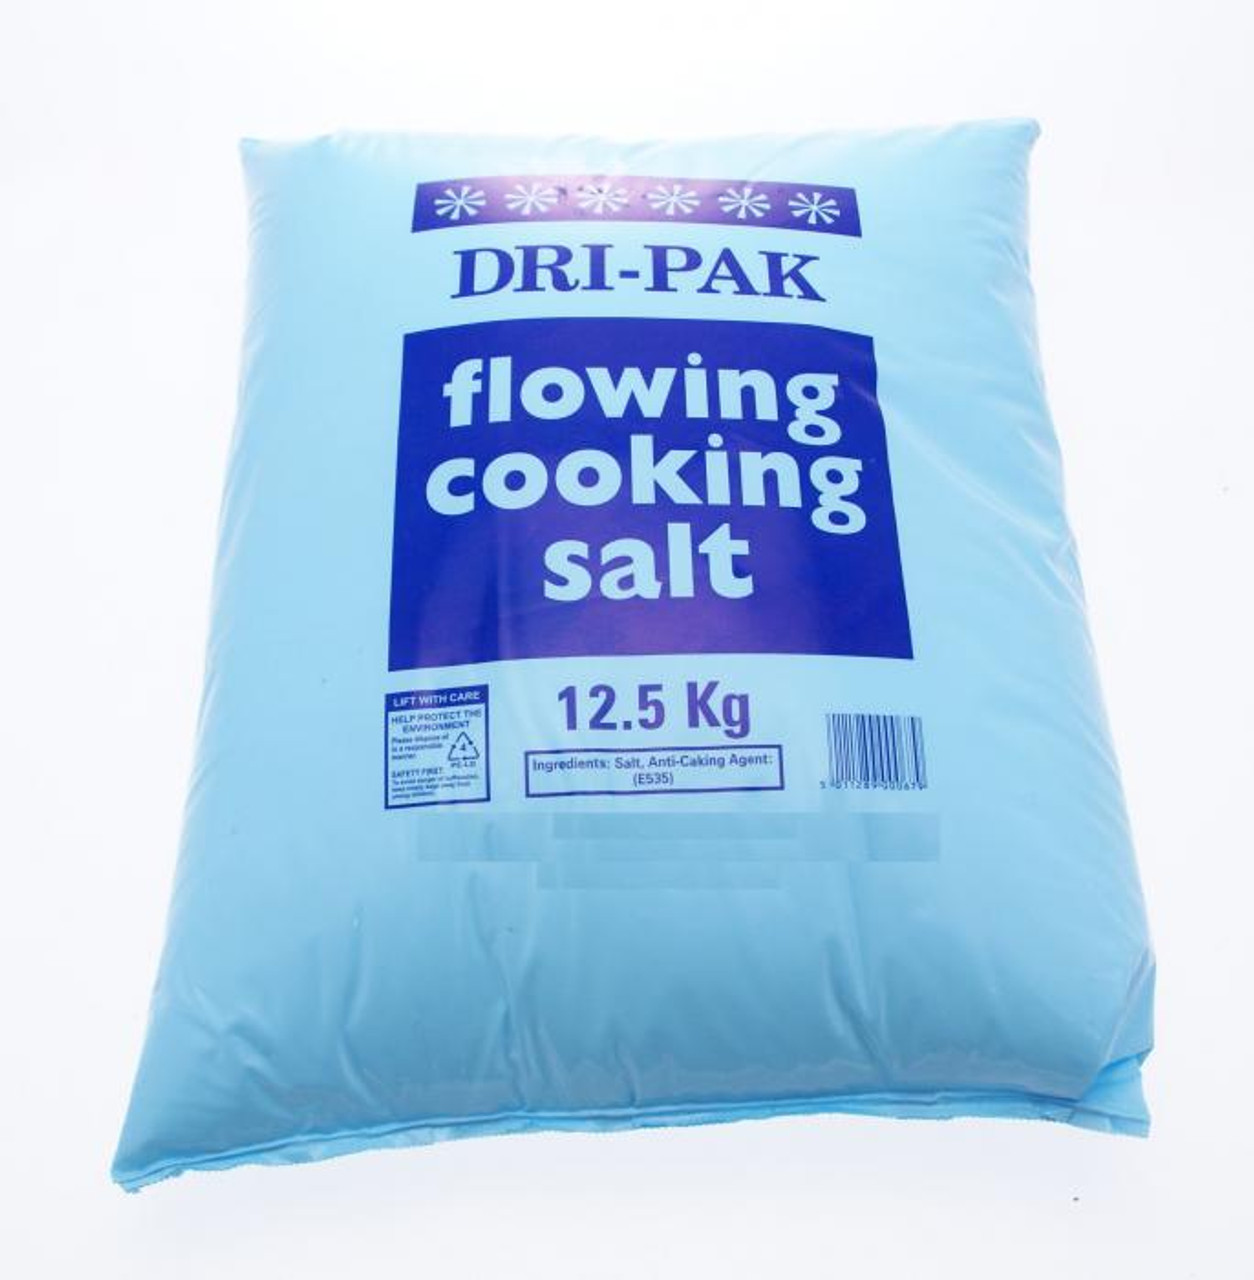 12.5 kg cooking salt